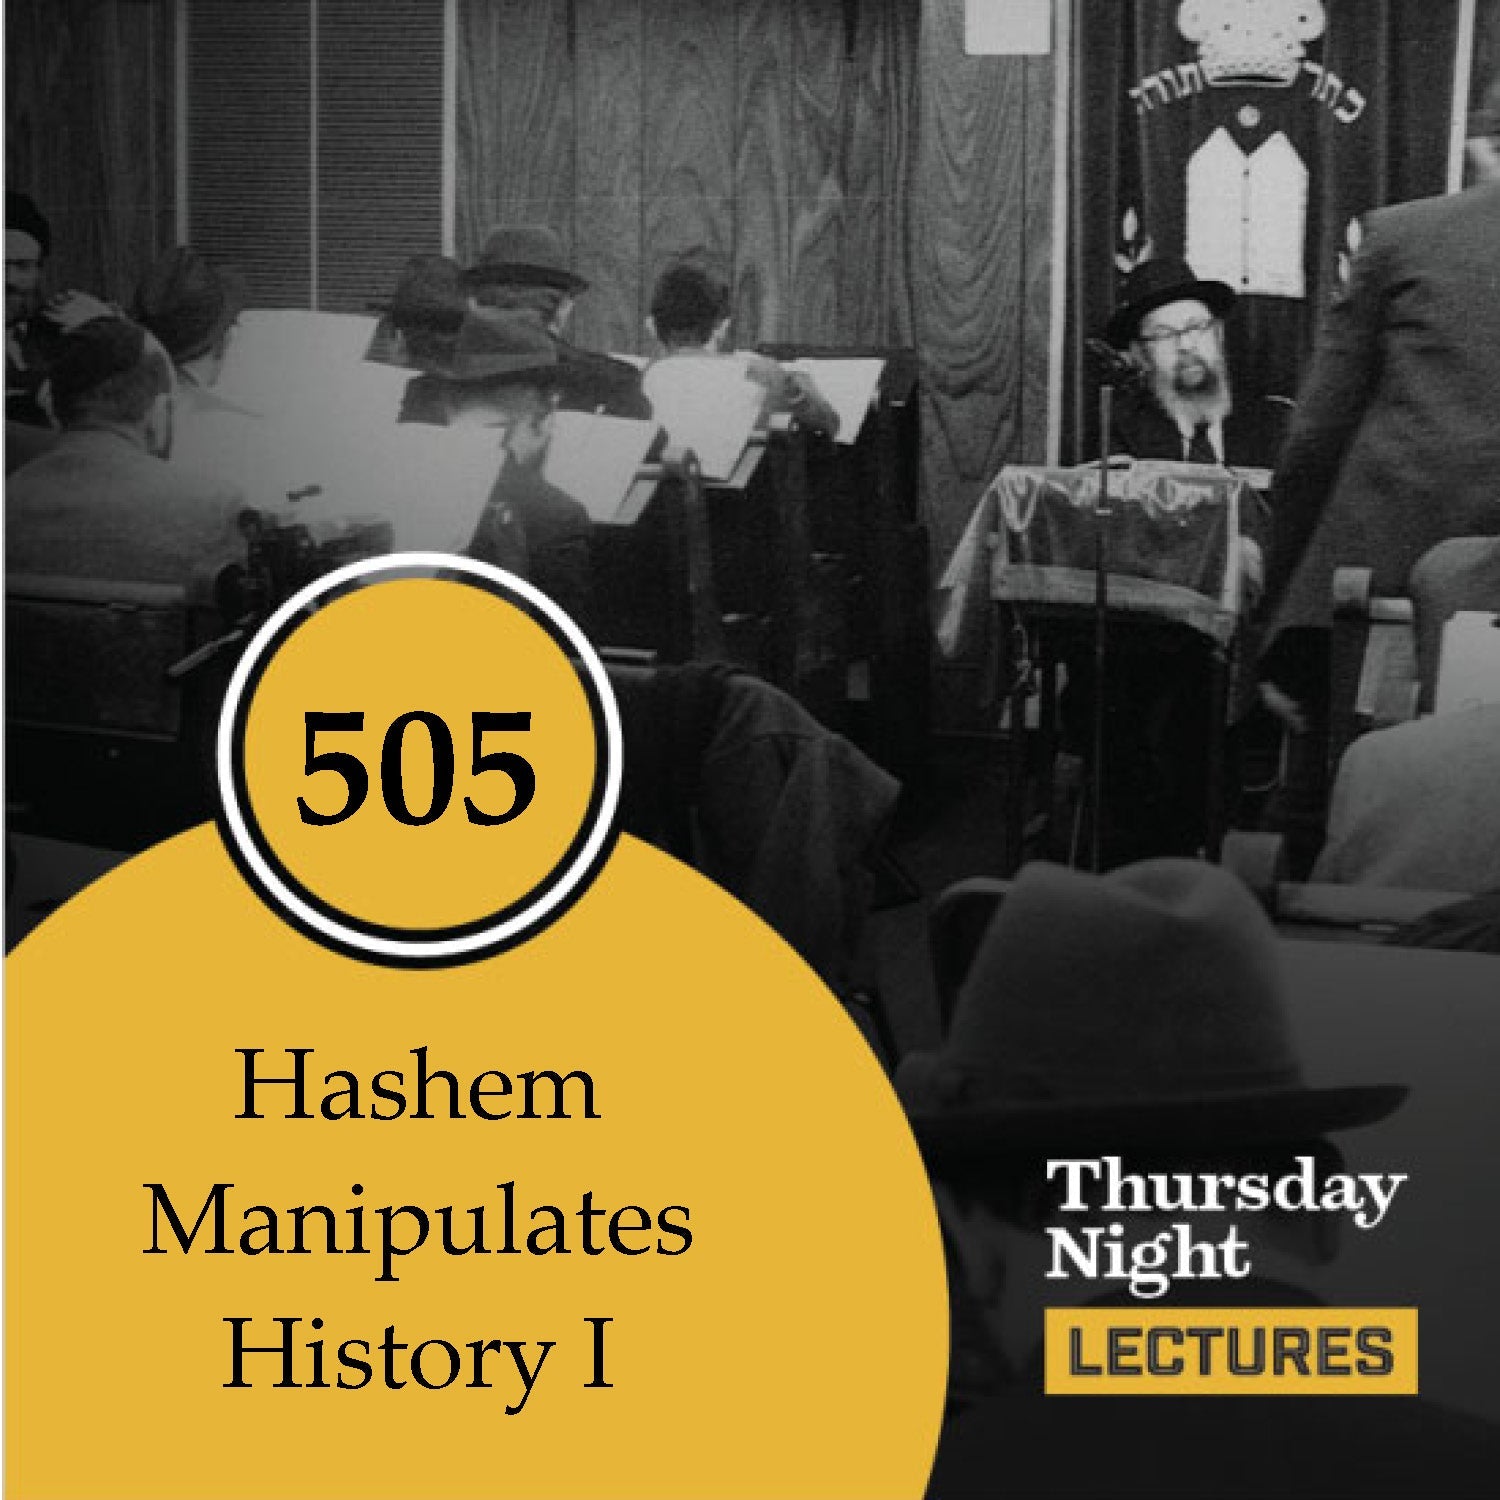 505 - Hashem Manipulates History I